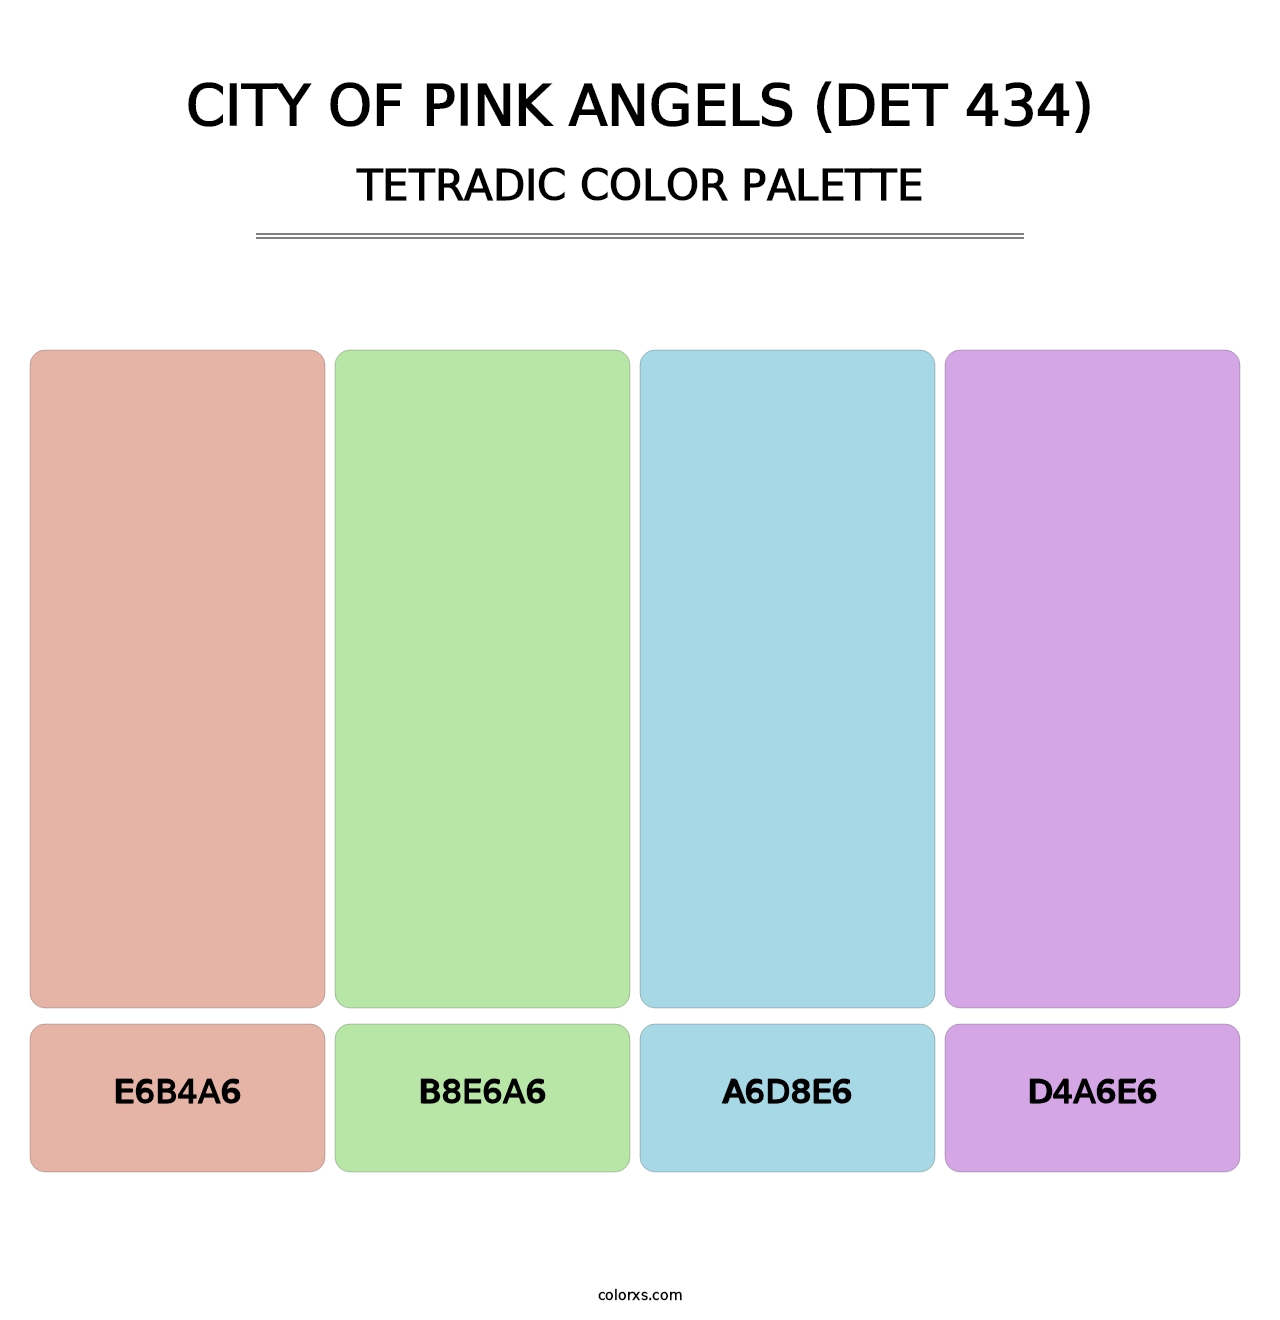 City of Pink Angels (DET 434) - Tetradic Color Palette